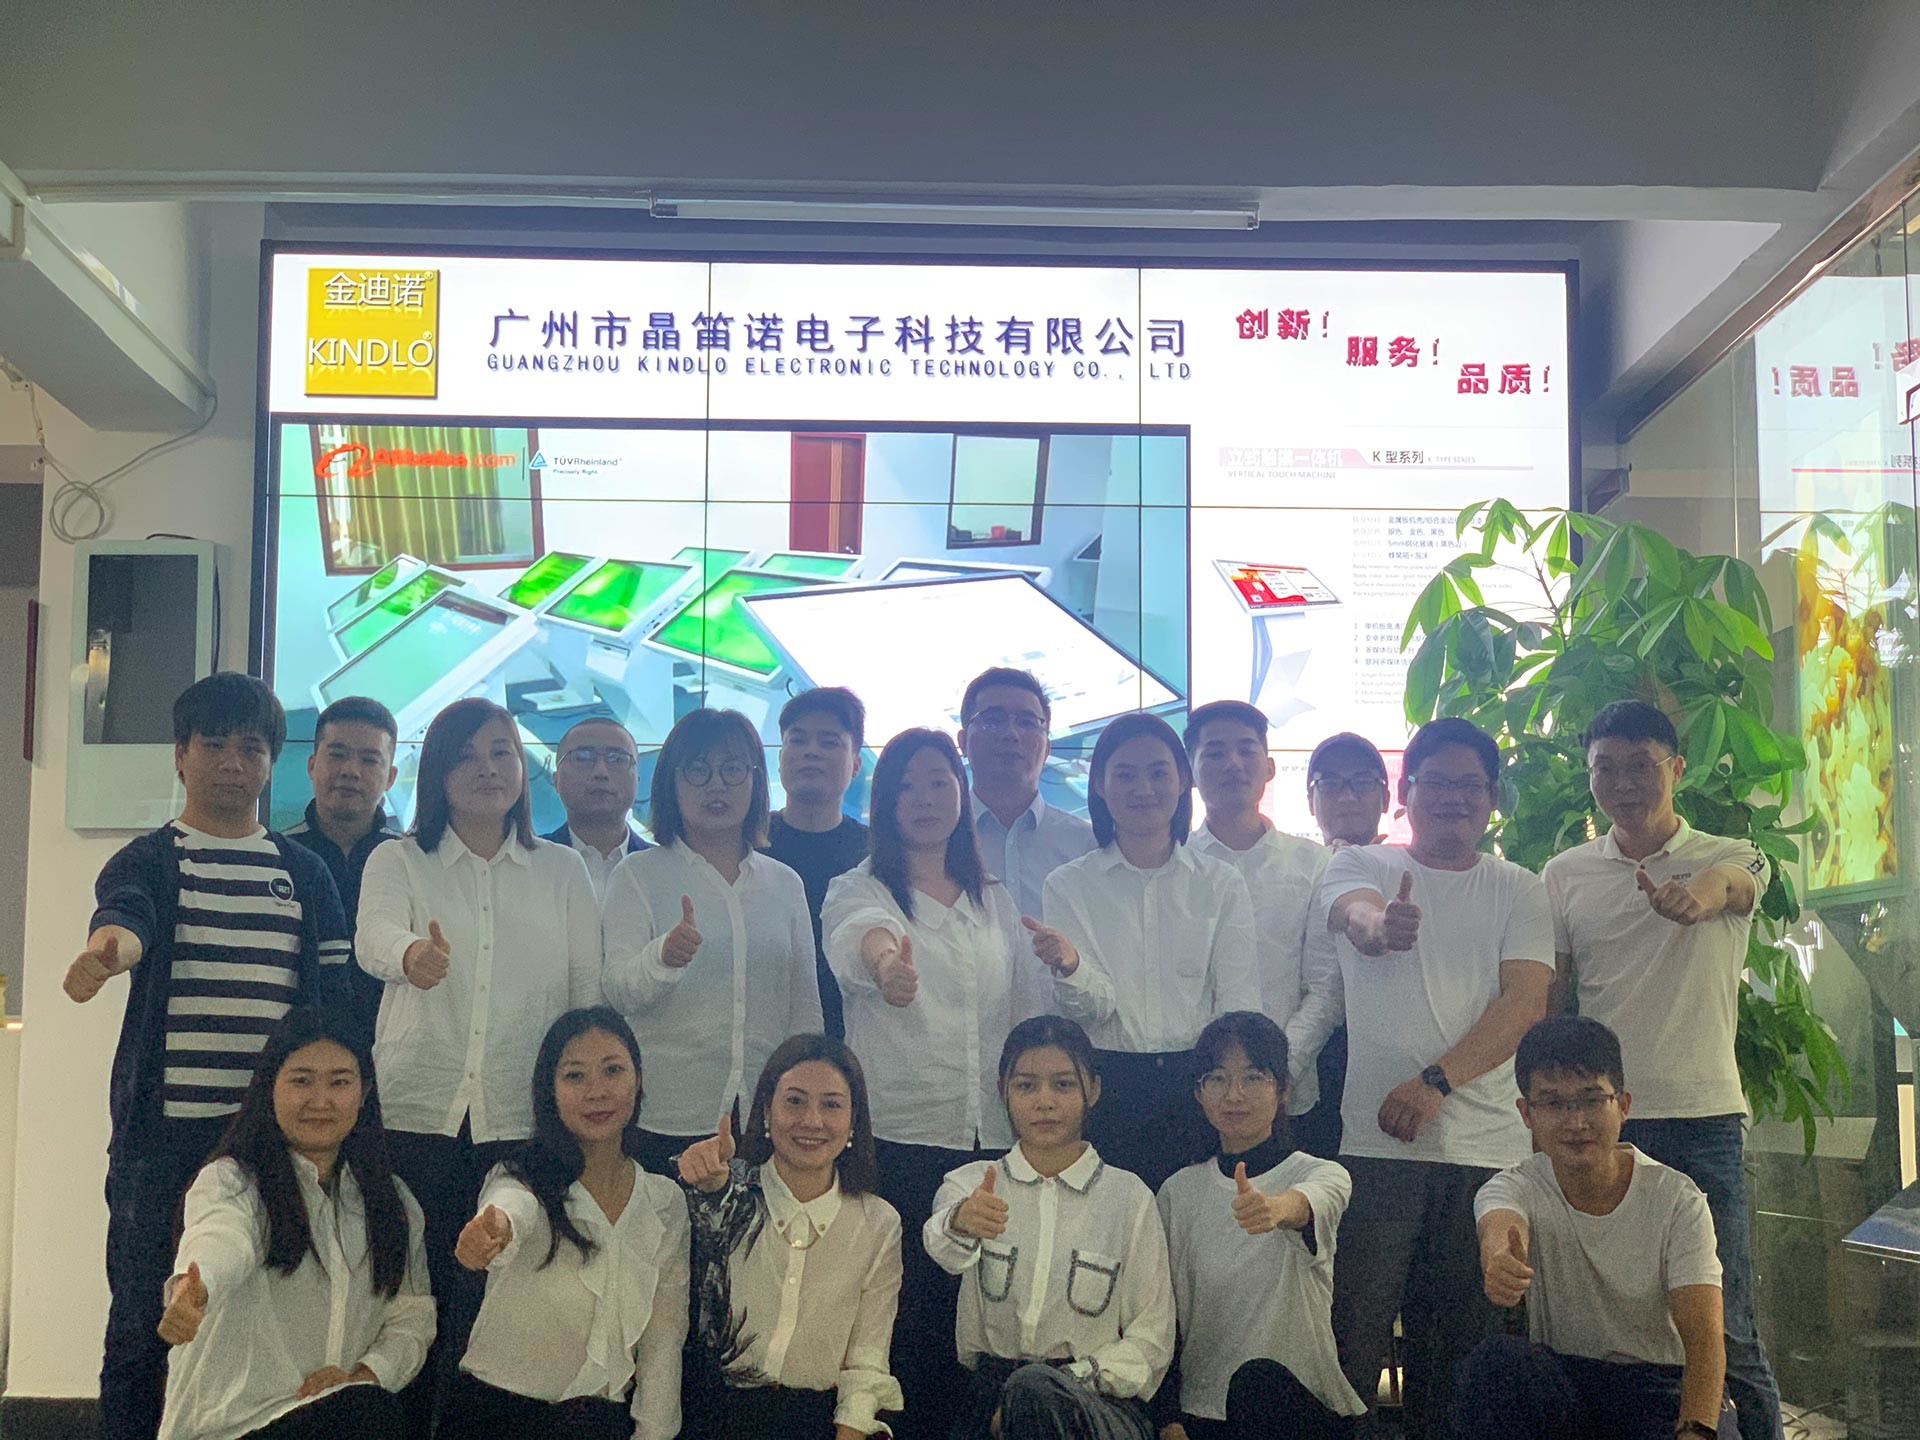 Trung Quốc Guangzhou Jingdinuo Electronic Technology Co., Ltd.